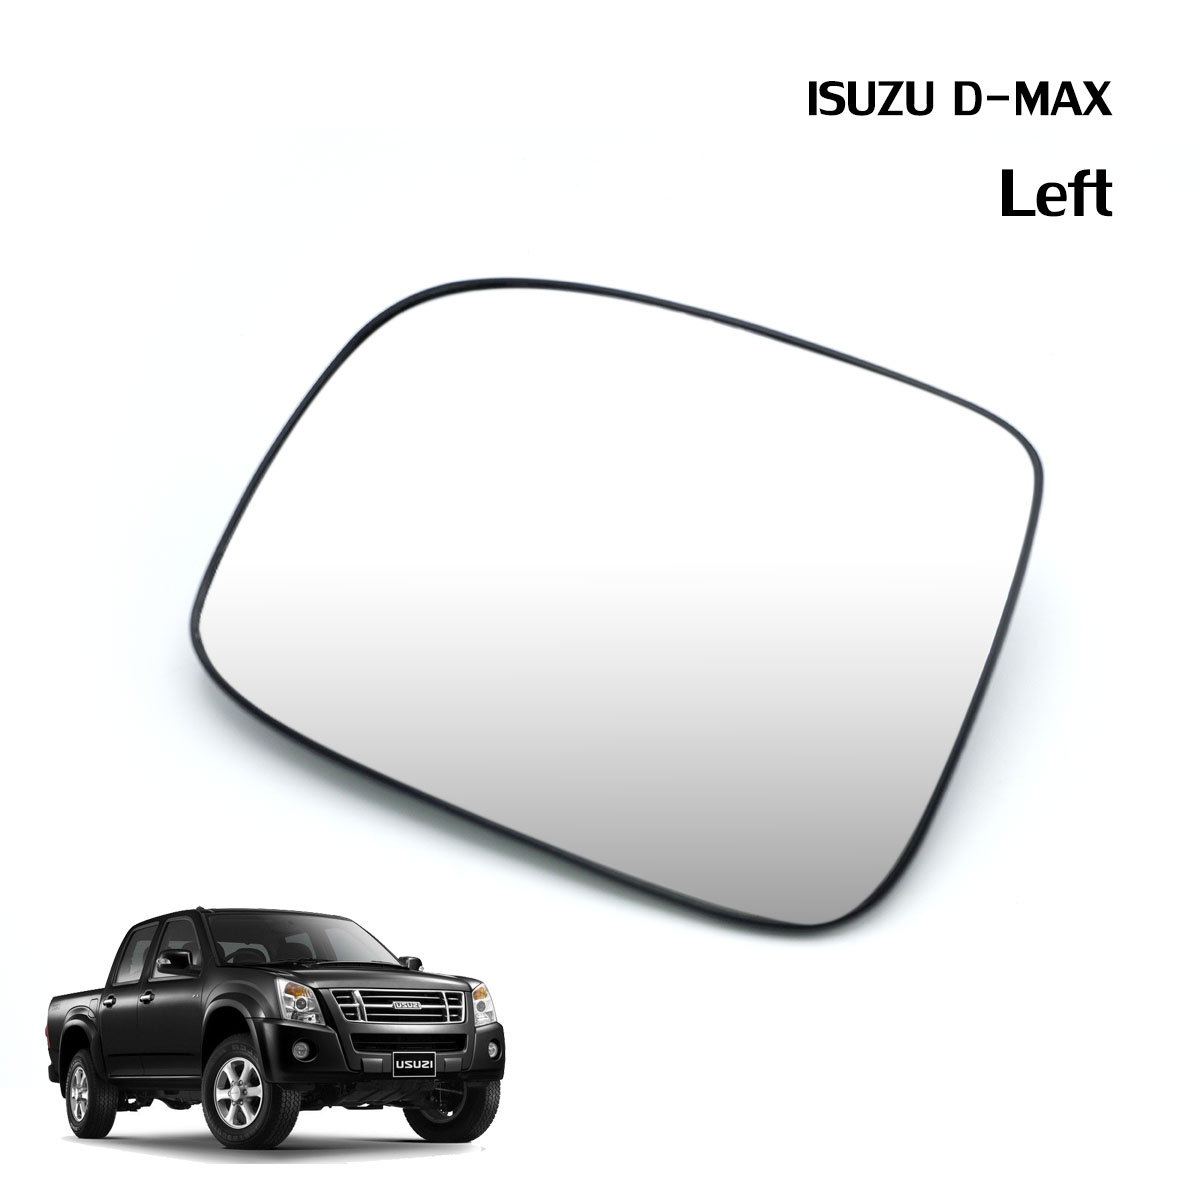 เนื้อเลนส์กระจก ข้าง ซ้าย ใส่ Isuzu D-Max Gold series LH Wing Side Door Mirror Glass Len D-Max Gold series Isuzu 2003-2011